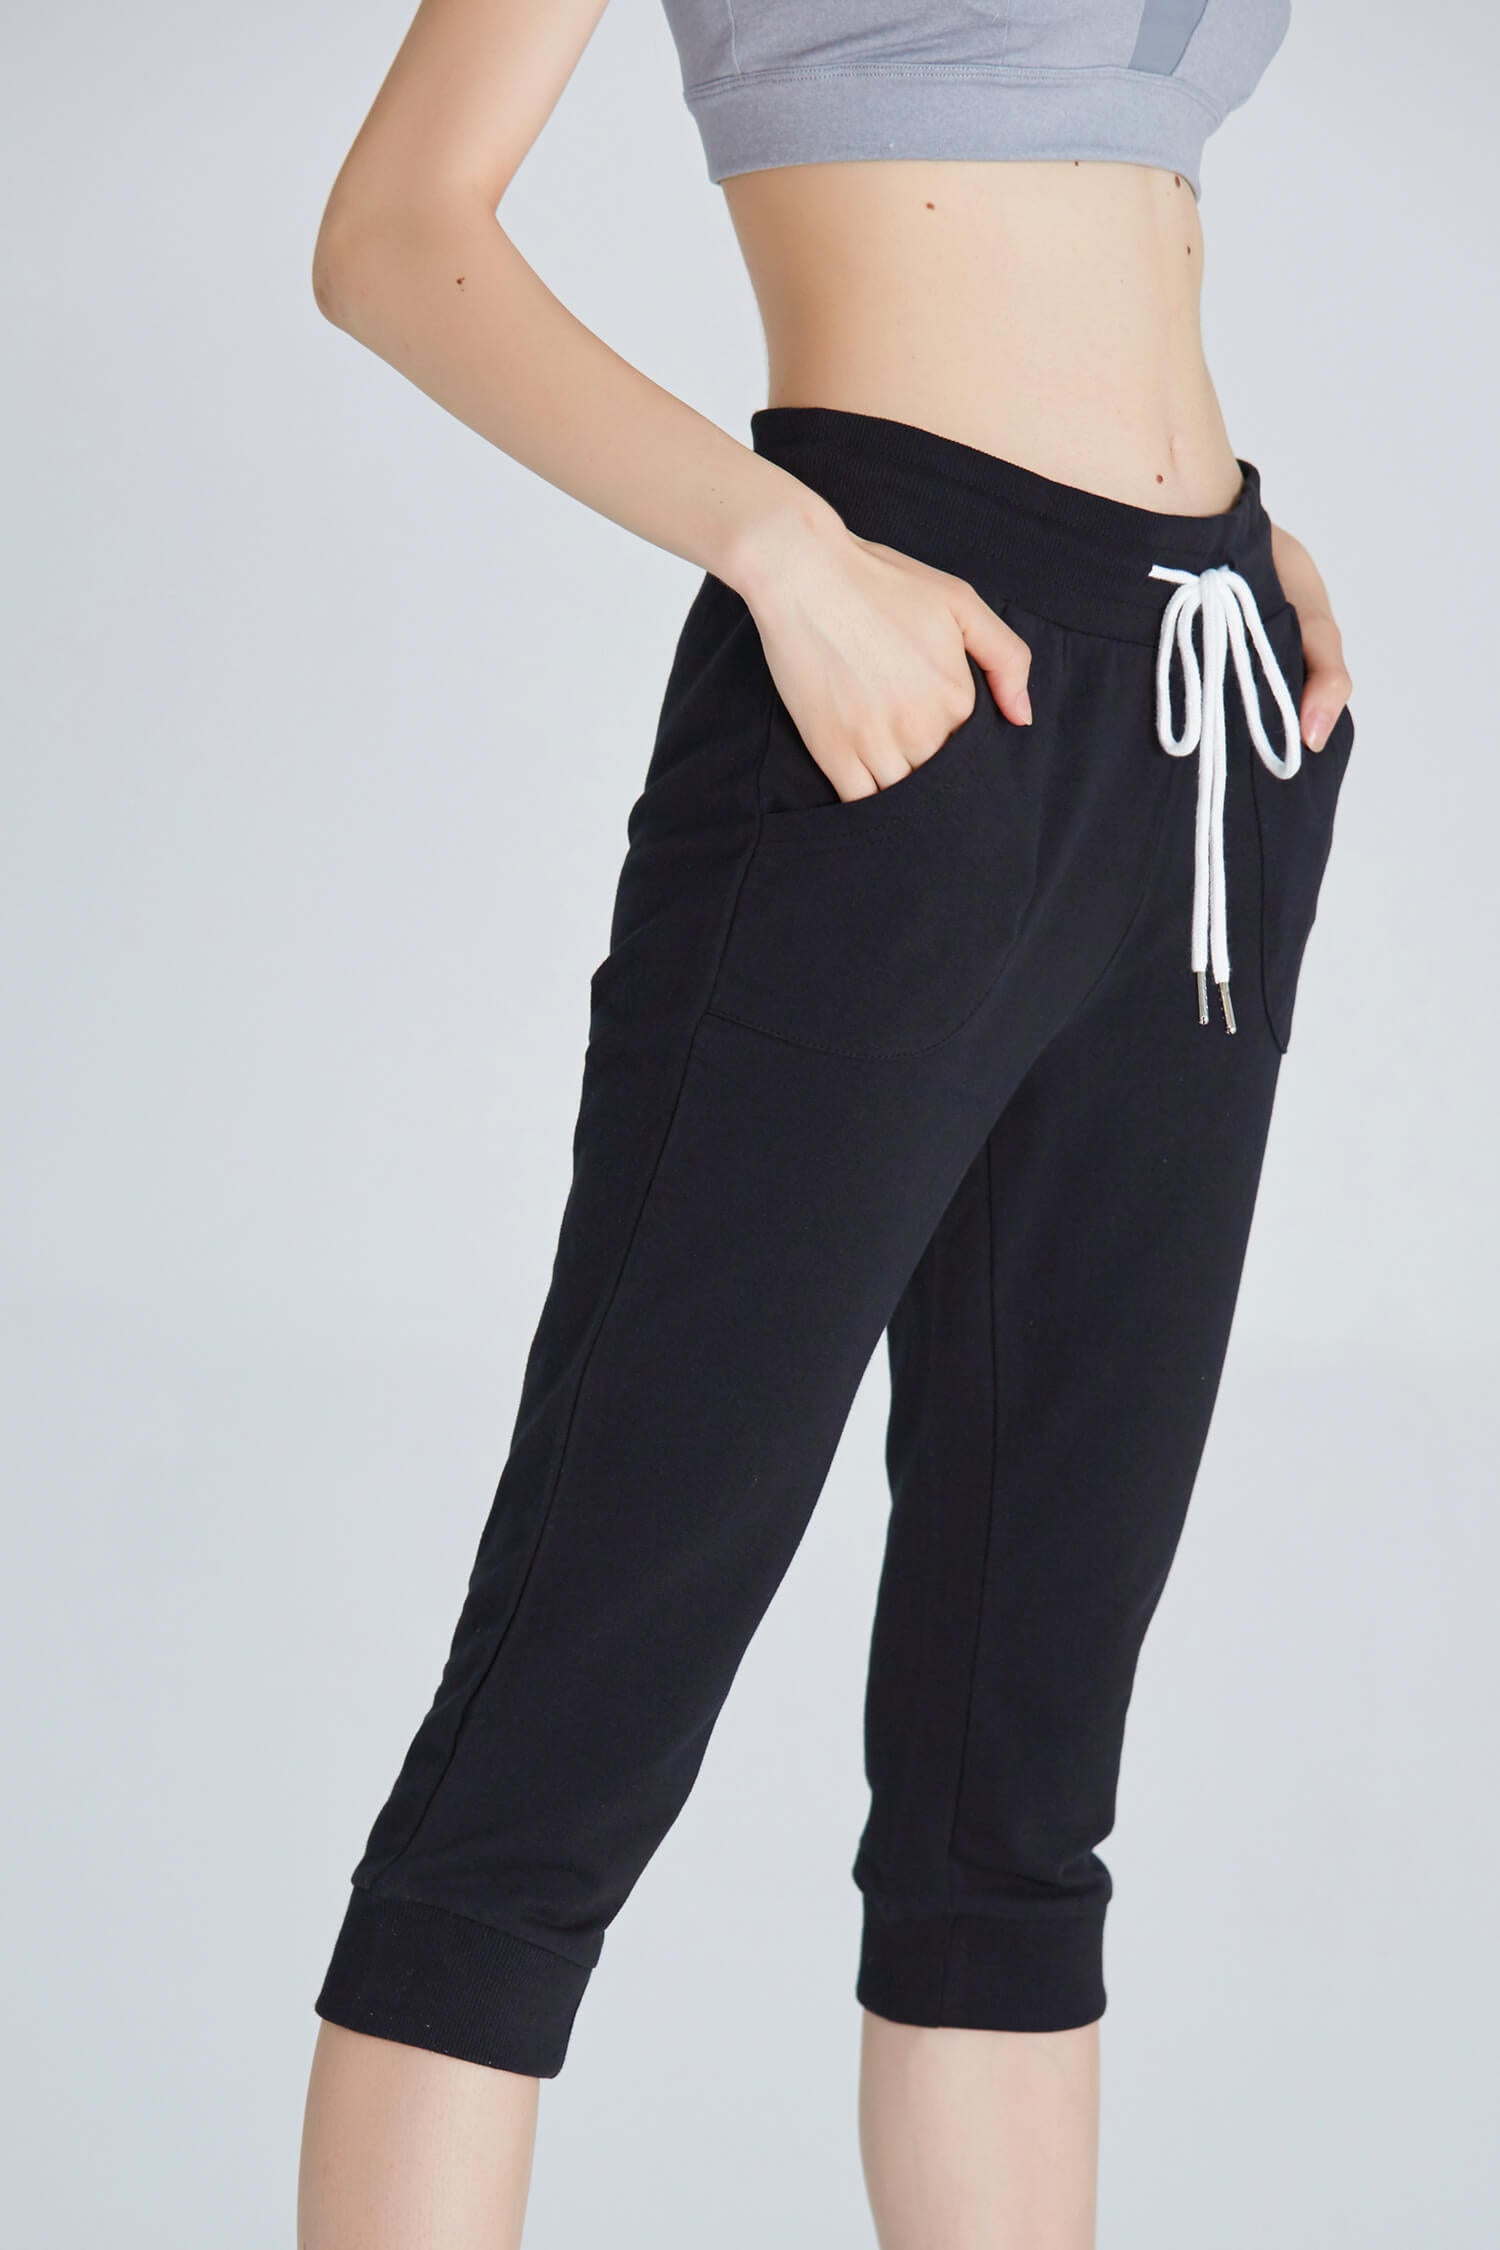 Cotonie Women's Capri Pants Casual Cargo Capris High Waist Slim Fit Pants  Workout Sweatpants